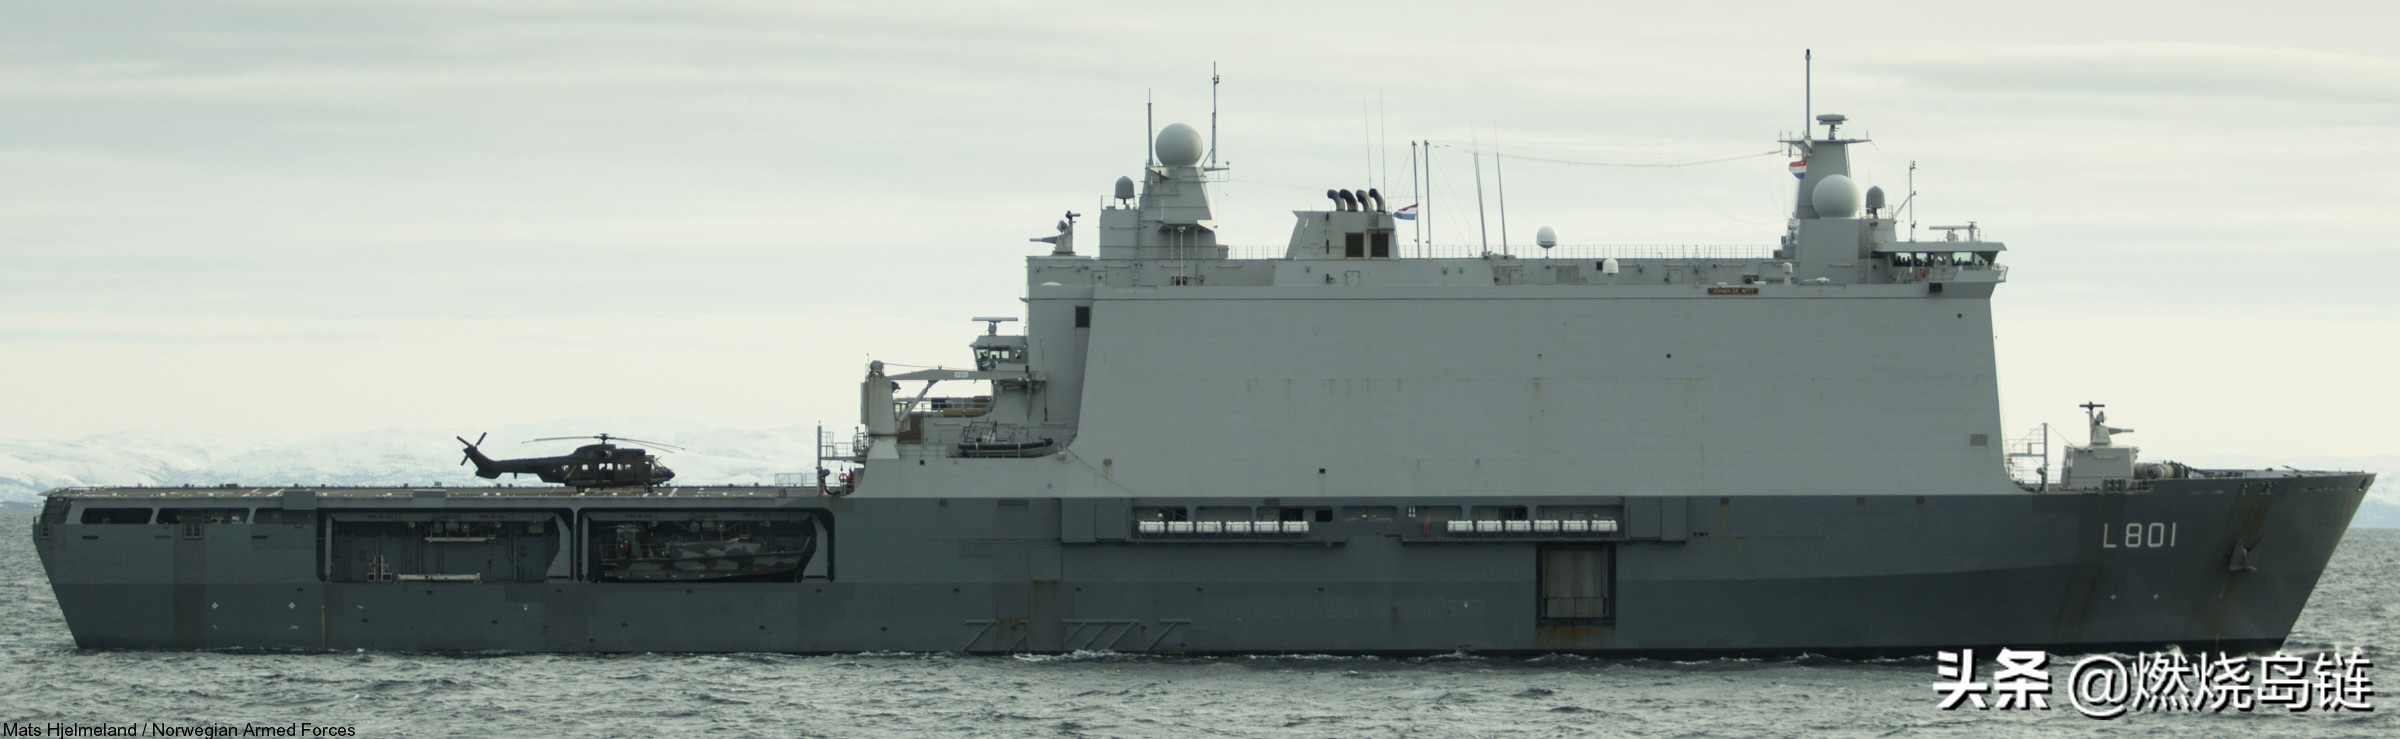 1/ 30 鹿特丹级船坞登陆舰(rotterdam-class amphibious transport